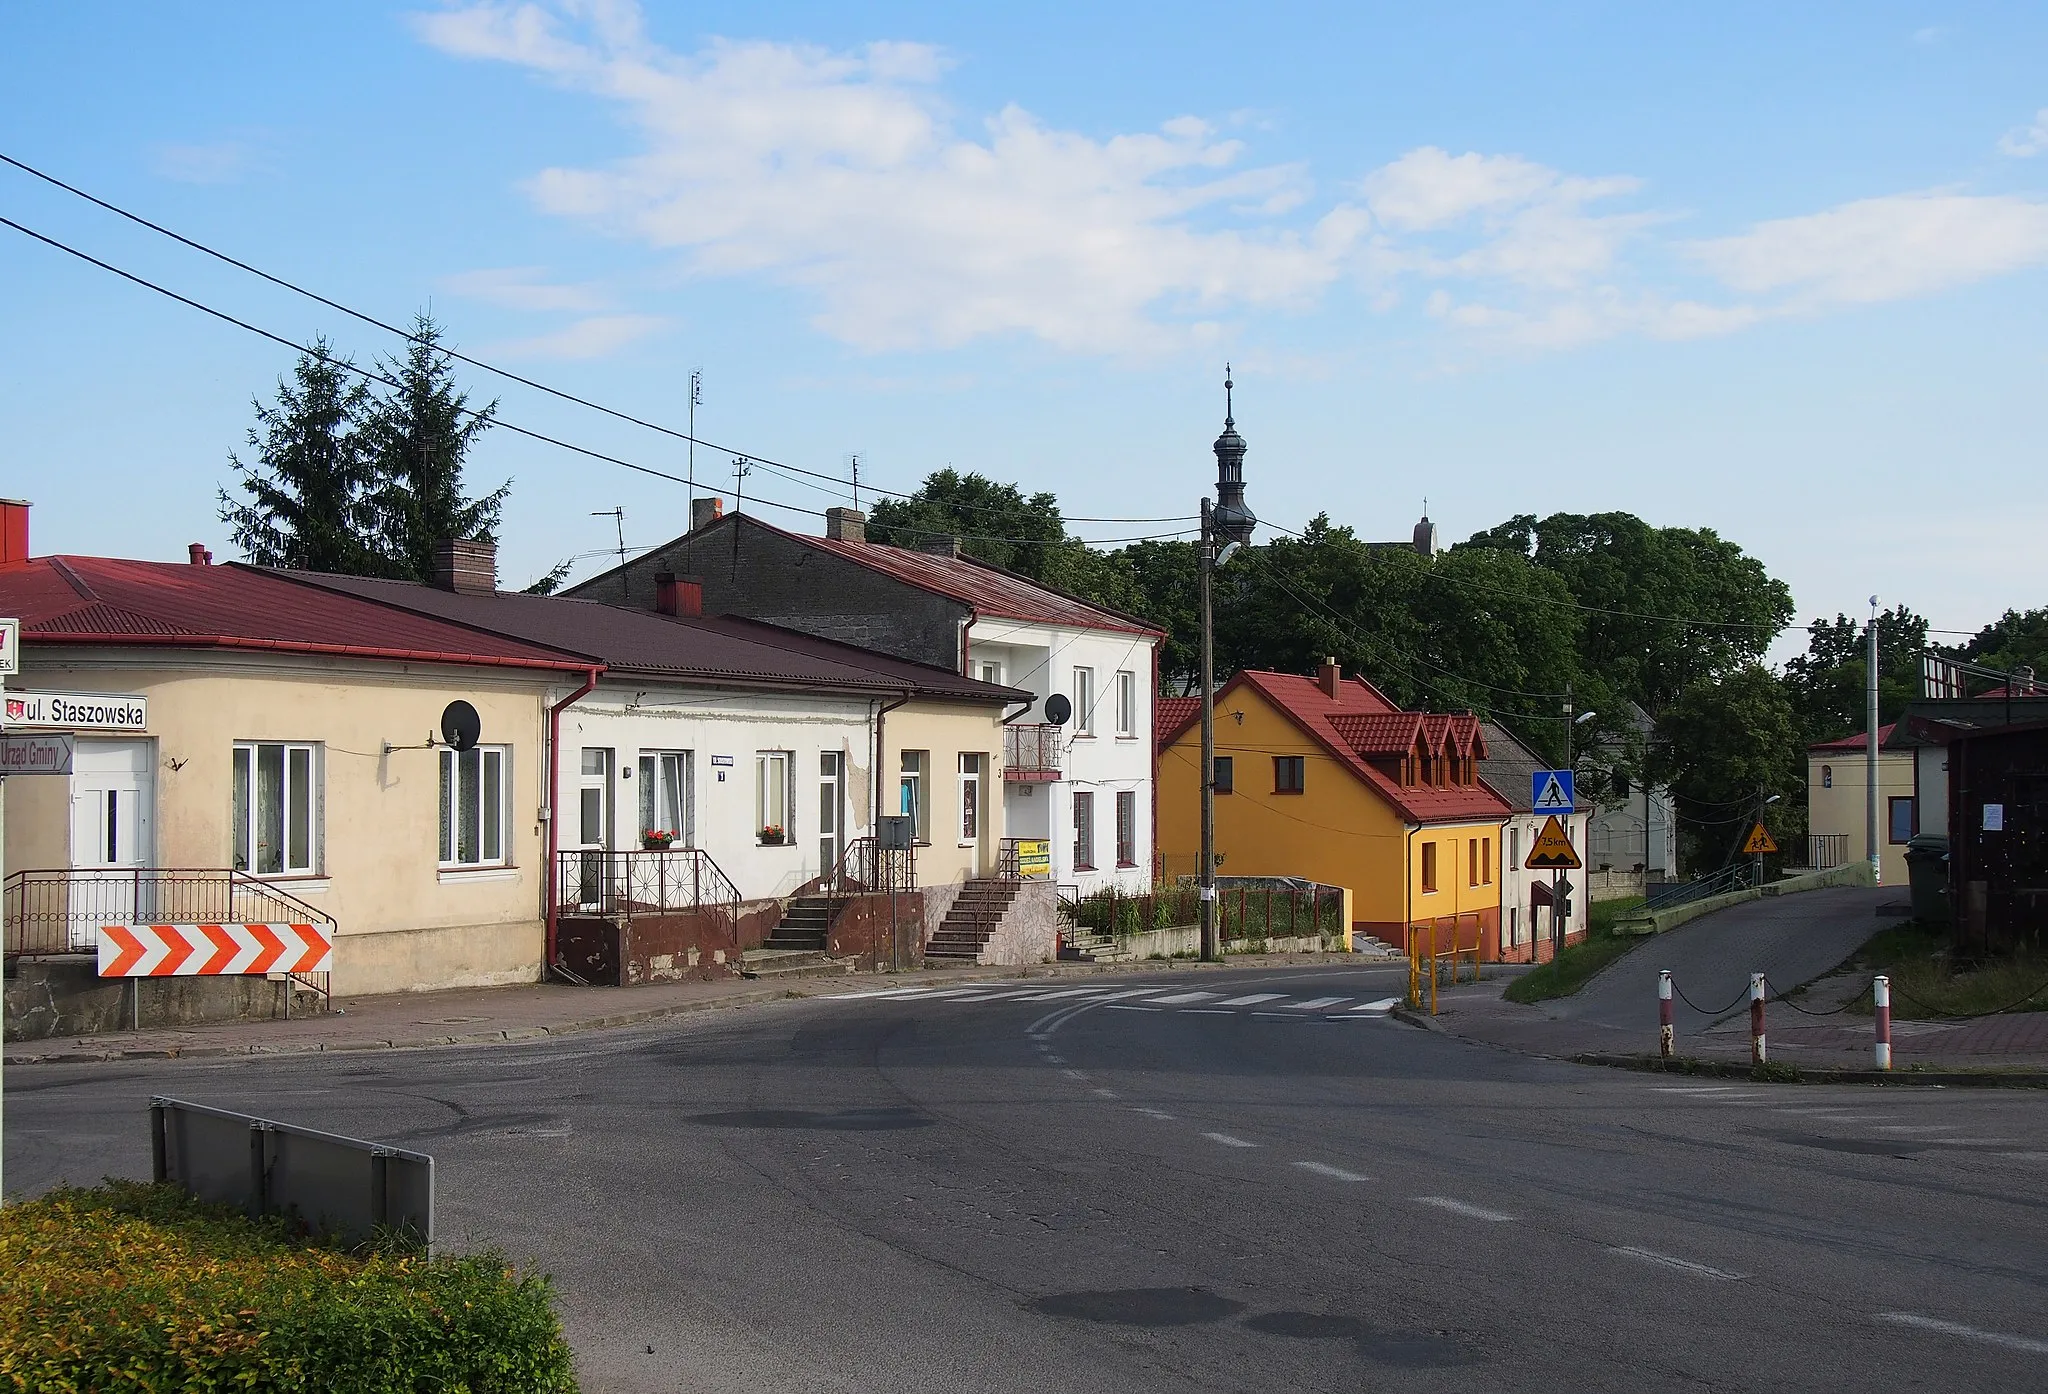 Photo showing: Bogoria, powiat staszowski, Polska. Wylot ulicy Staszowskiej z rynku.